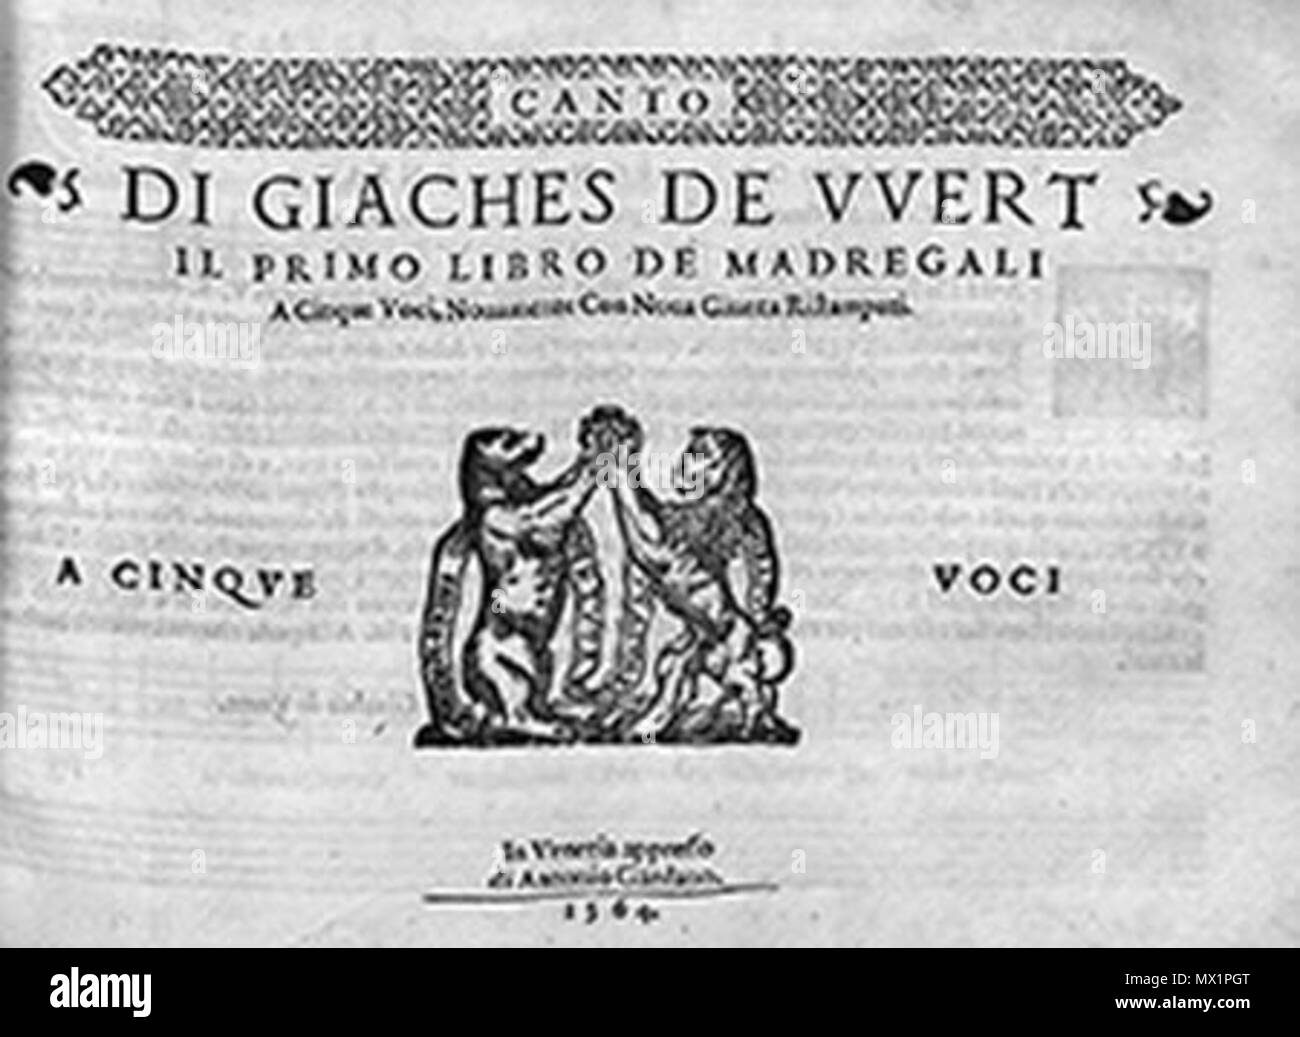 Wert 1 244 Giaches de Wert, primer libro de madrigales (1564) Stock Photo